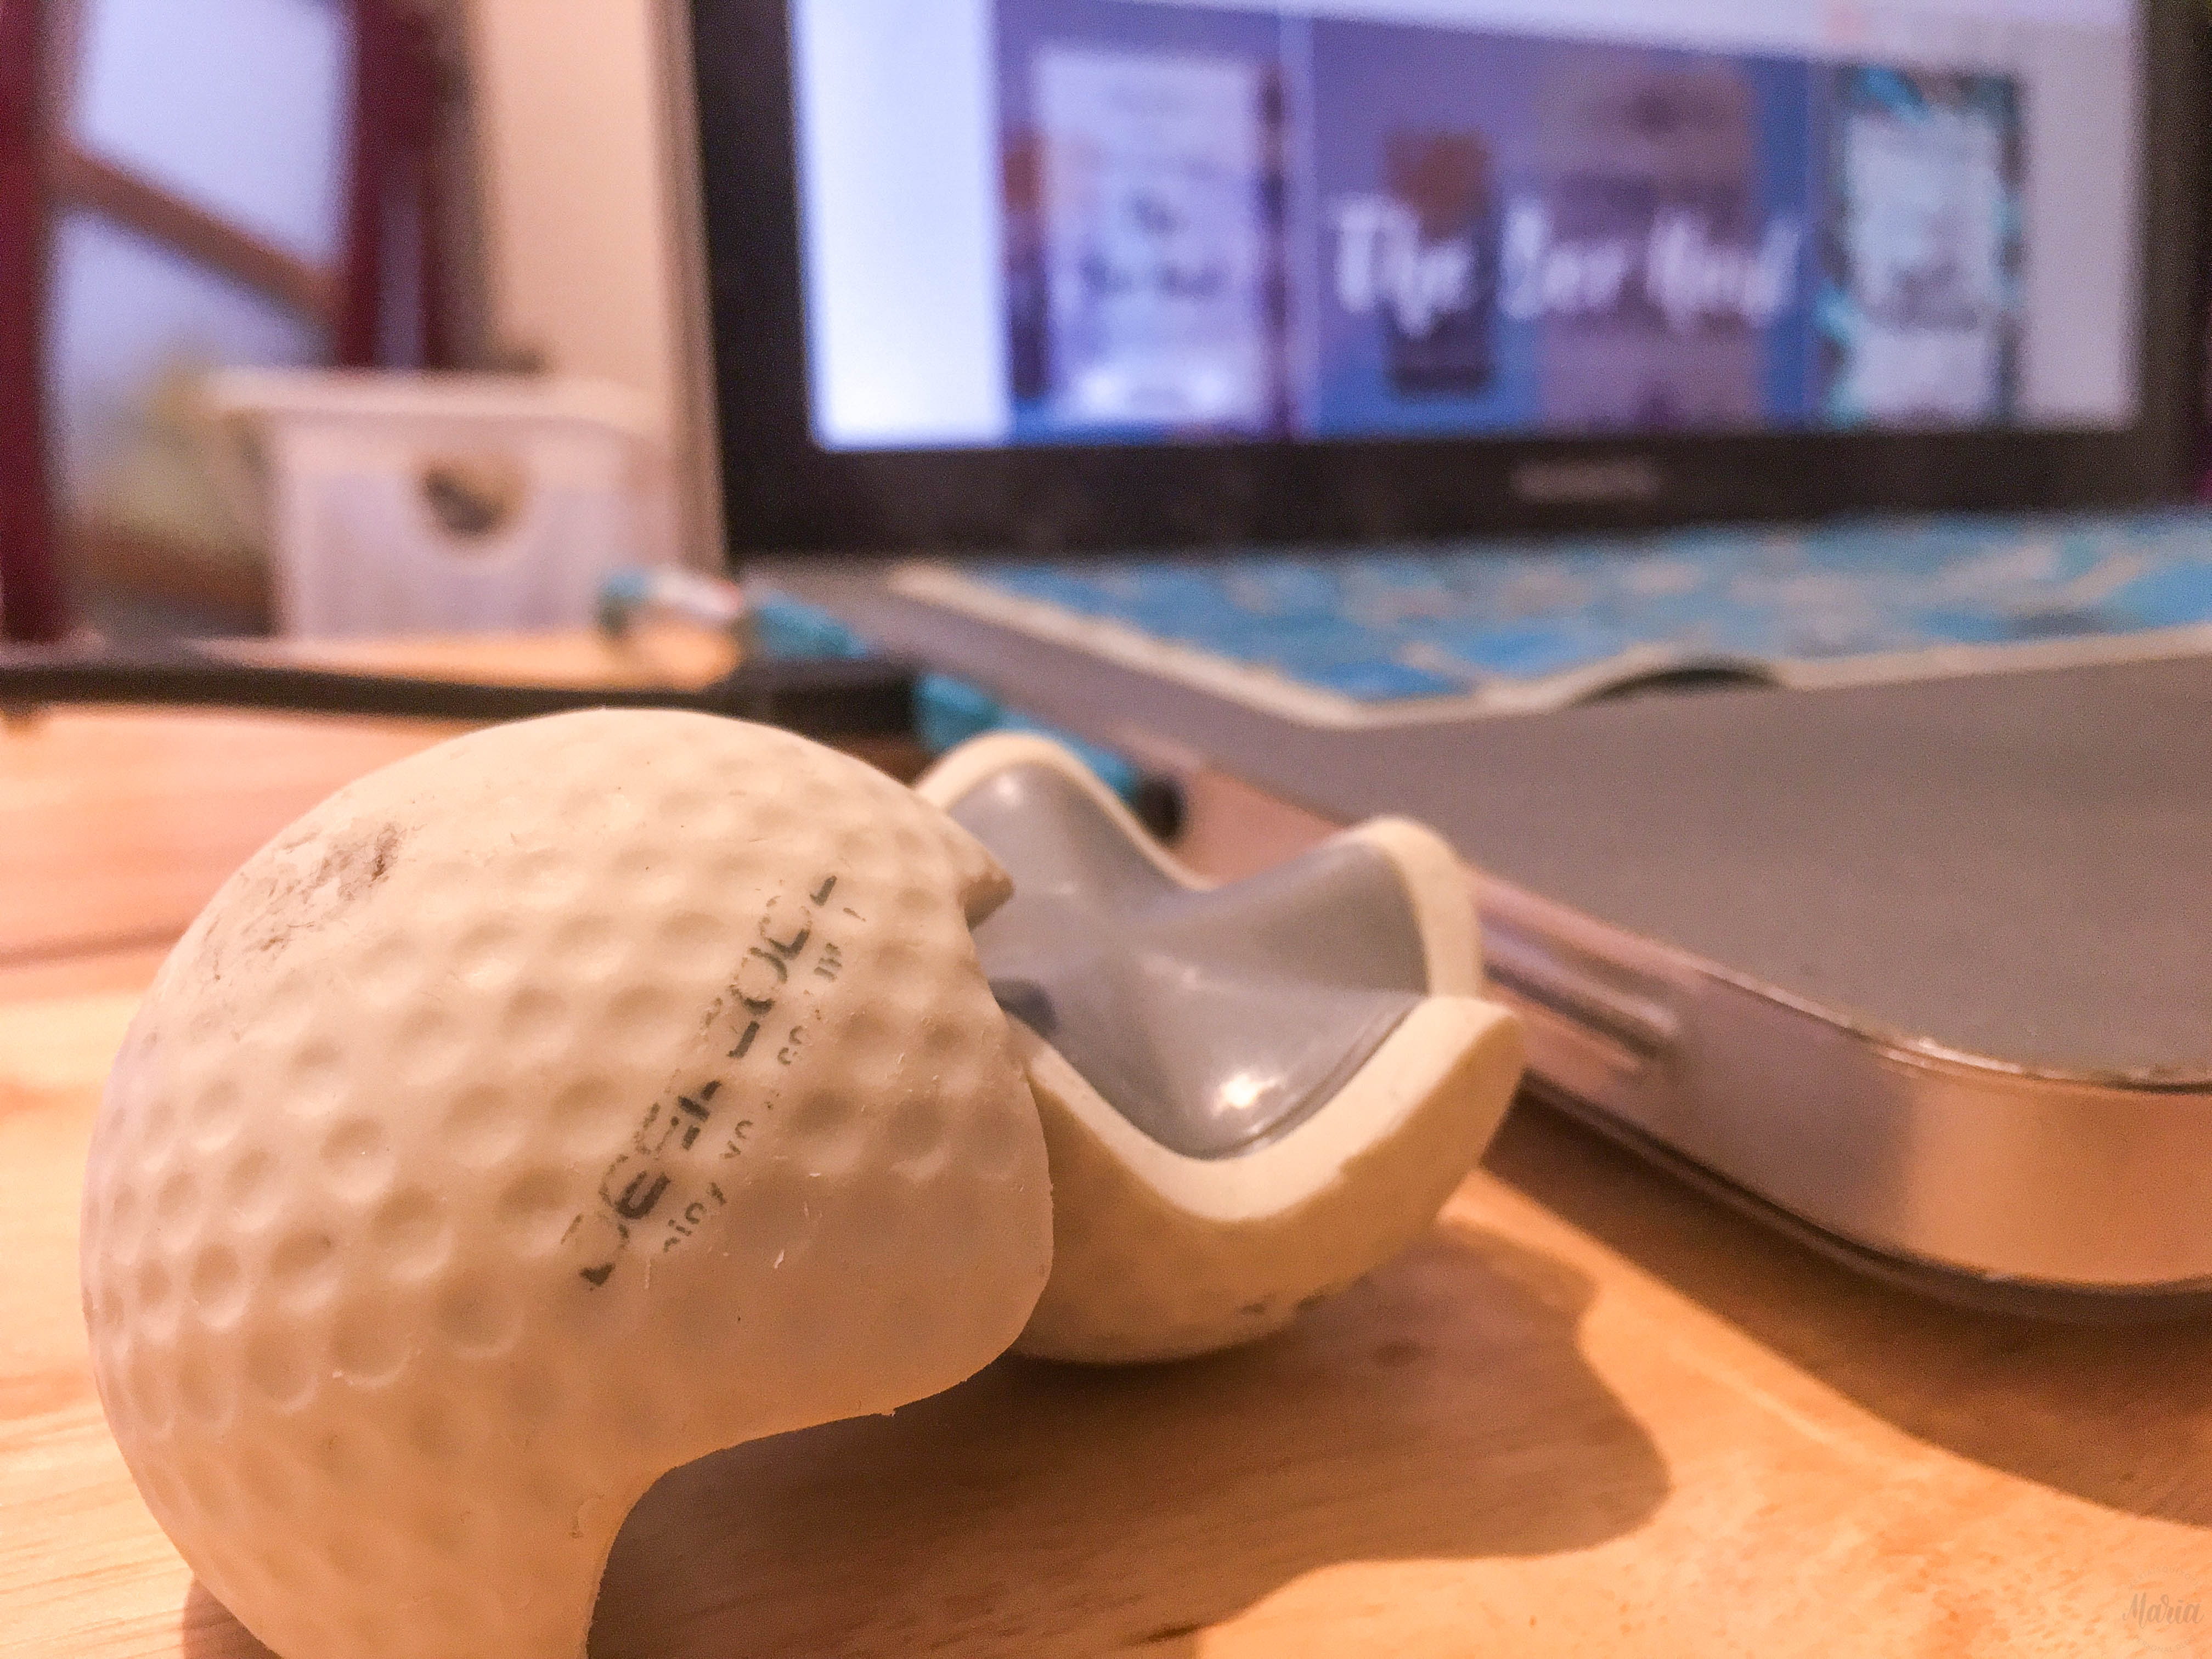 DeepCool E-Golf Notebook Cooler | The Ber Haul